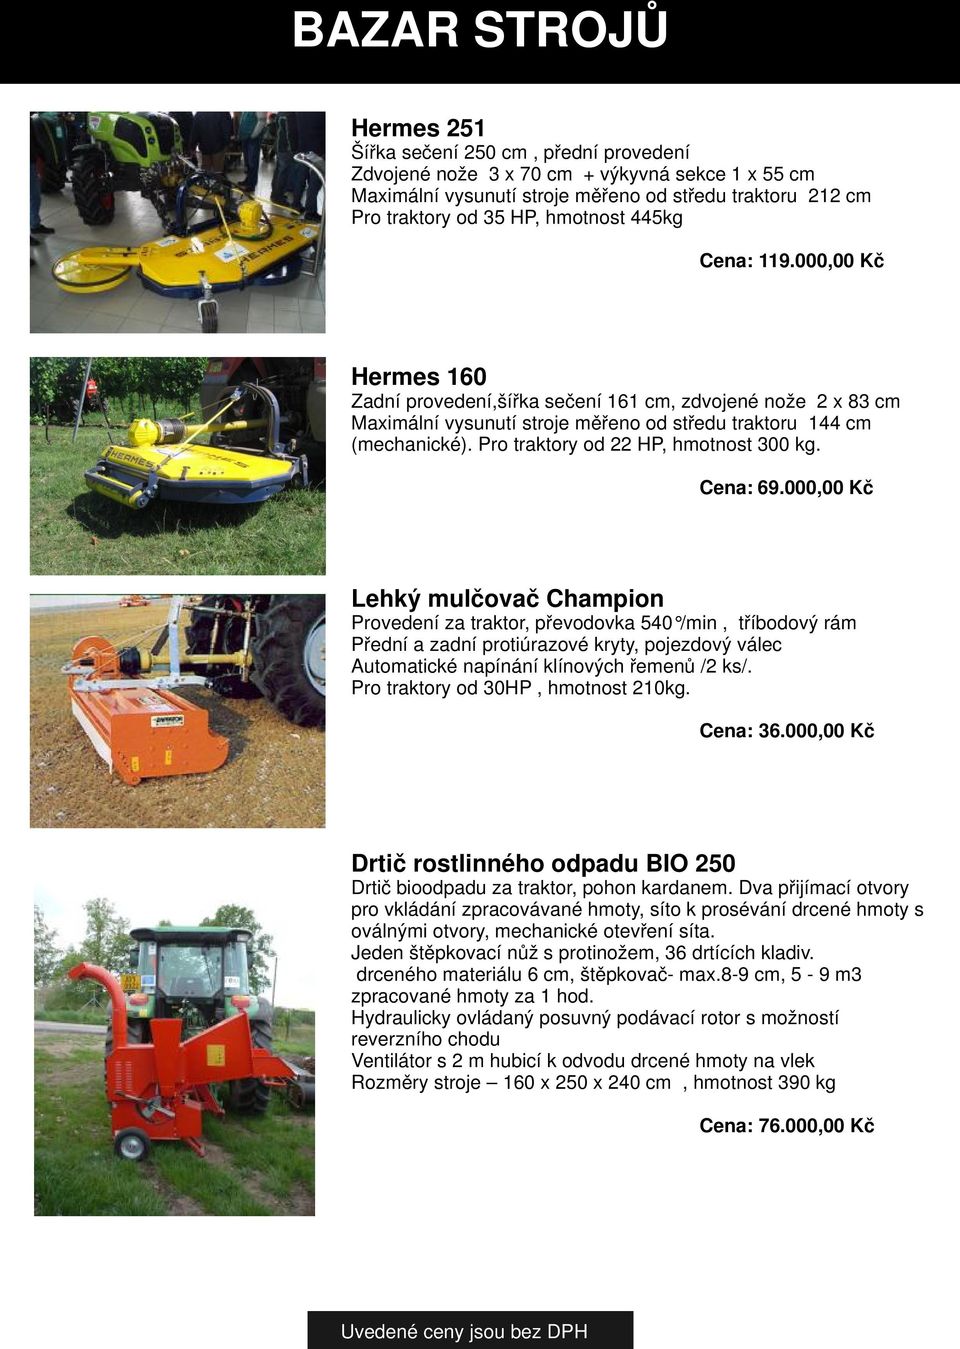 Pro traktory od 22 HP, hmotnost 300 kg. Cena: 69.